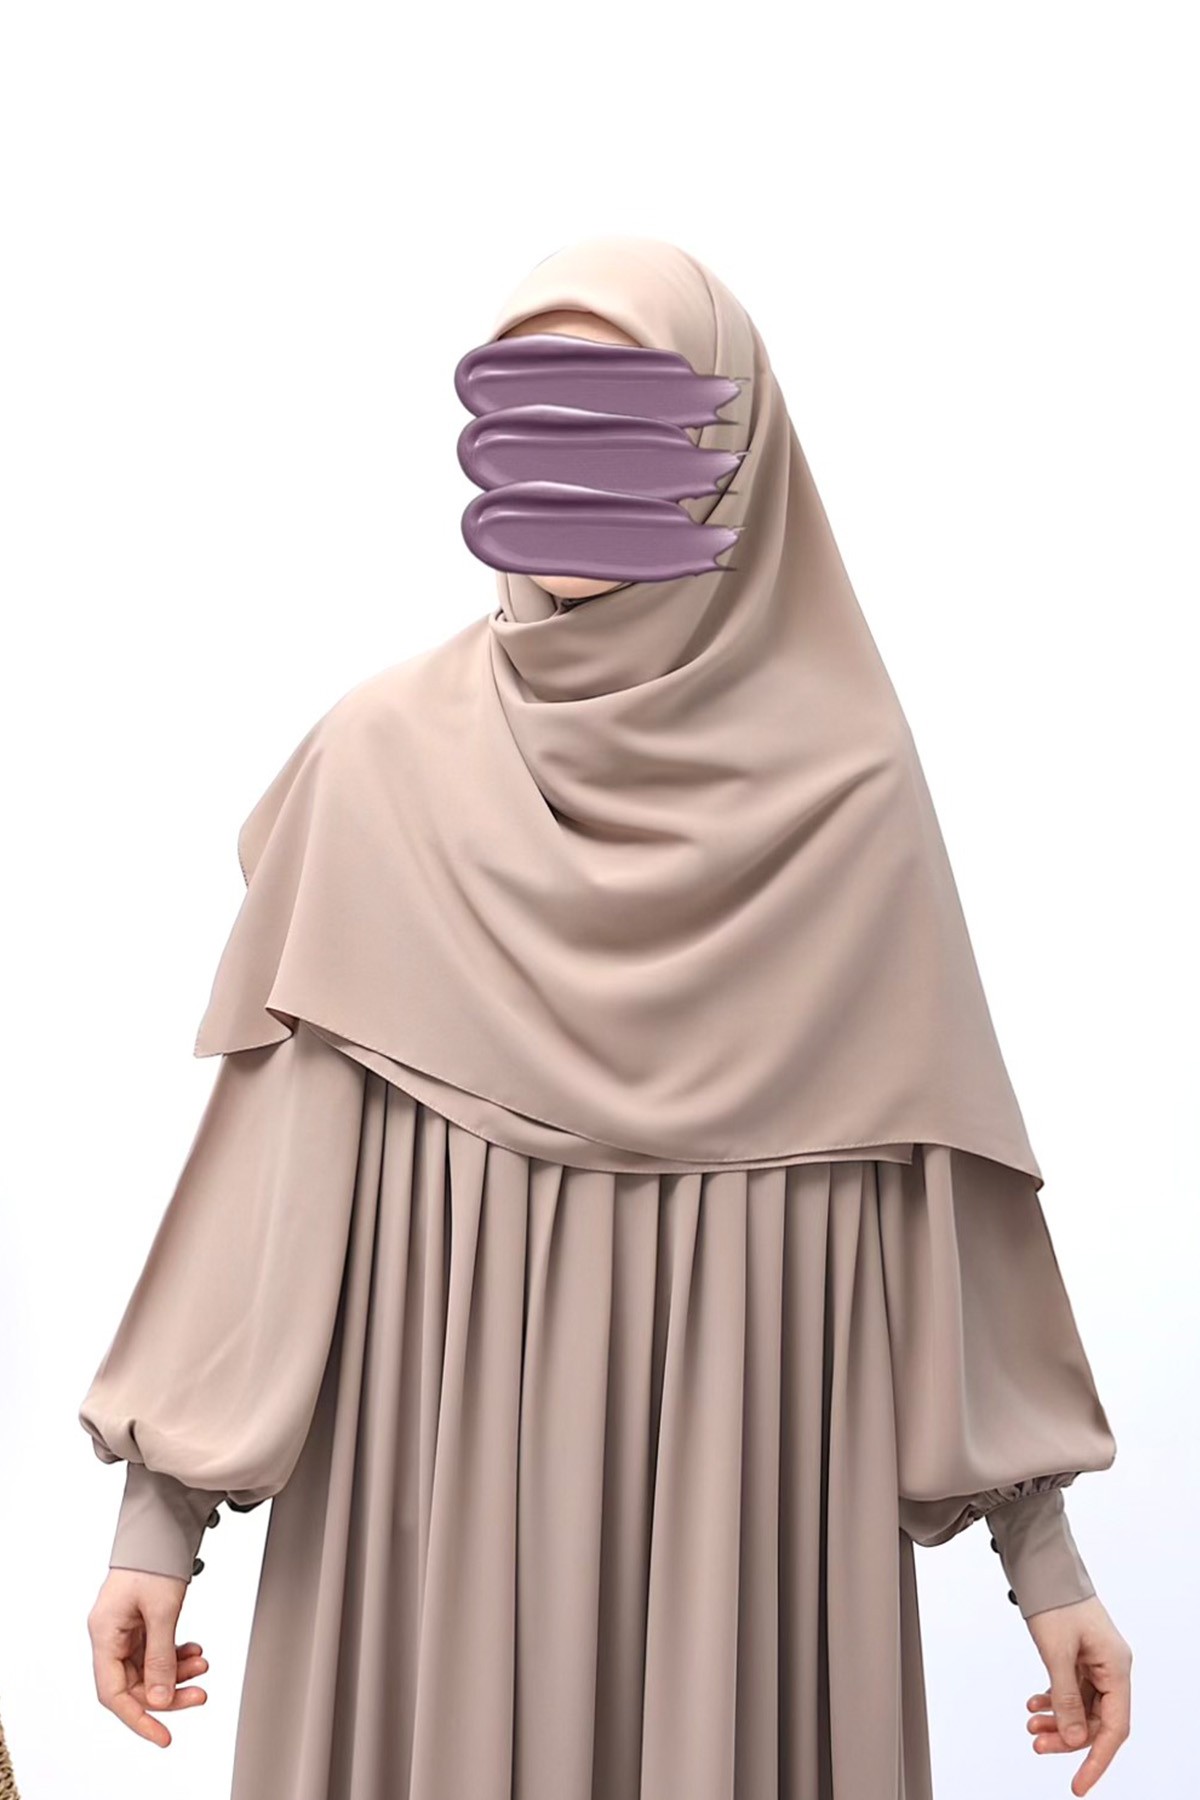 Square Hijab - Latte